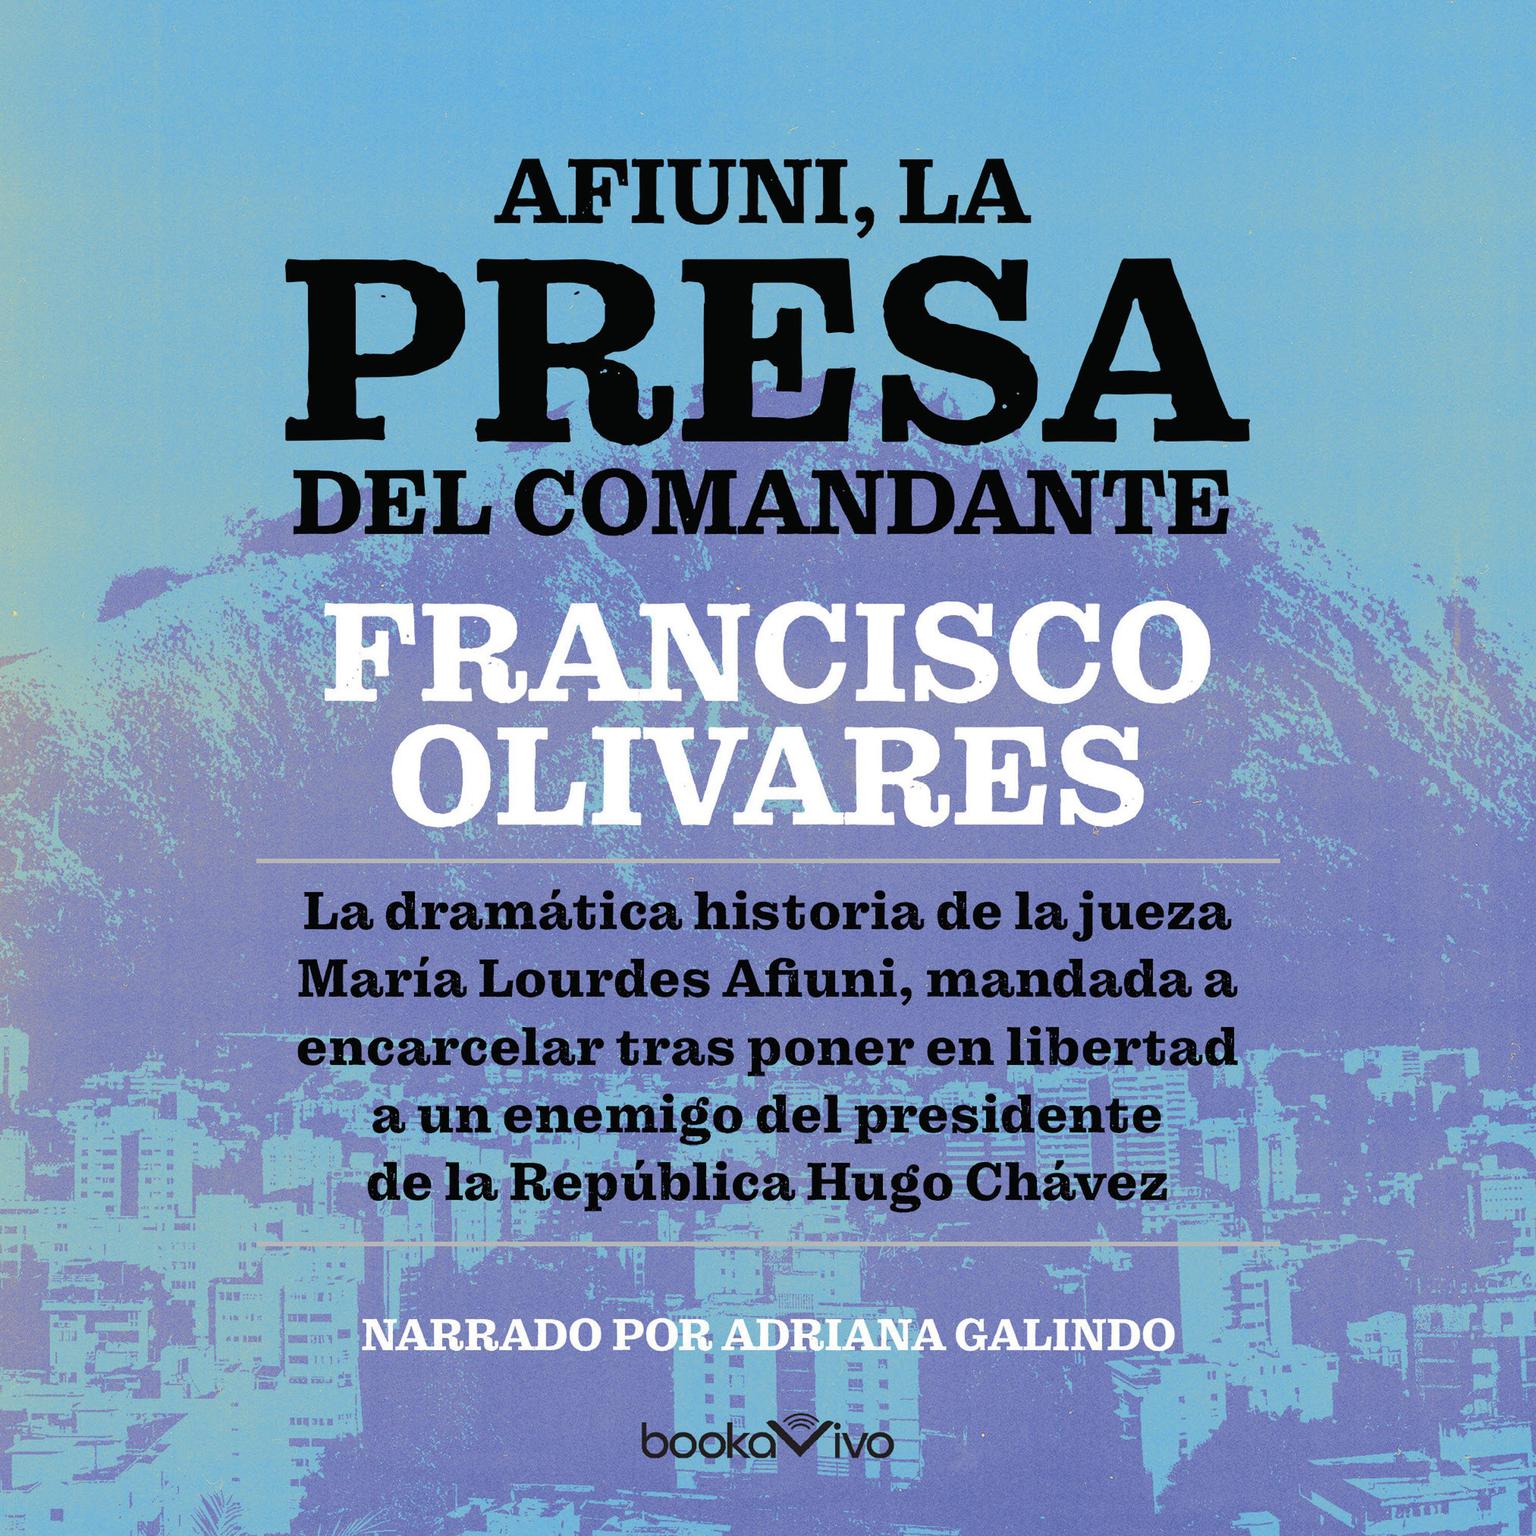 Afiuni, la presa del Comandante: Crimenes de Estado Audiobook, by Francisco Olivares